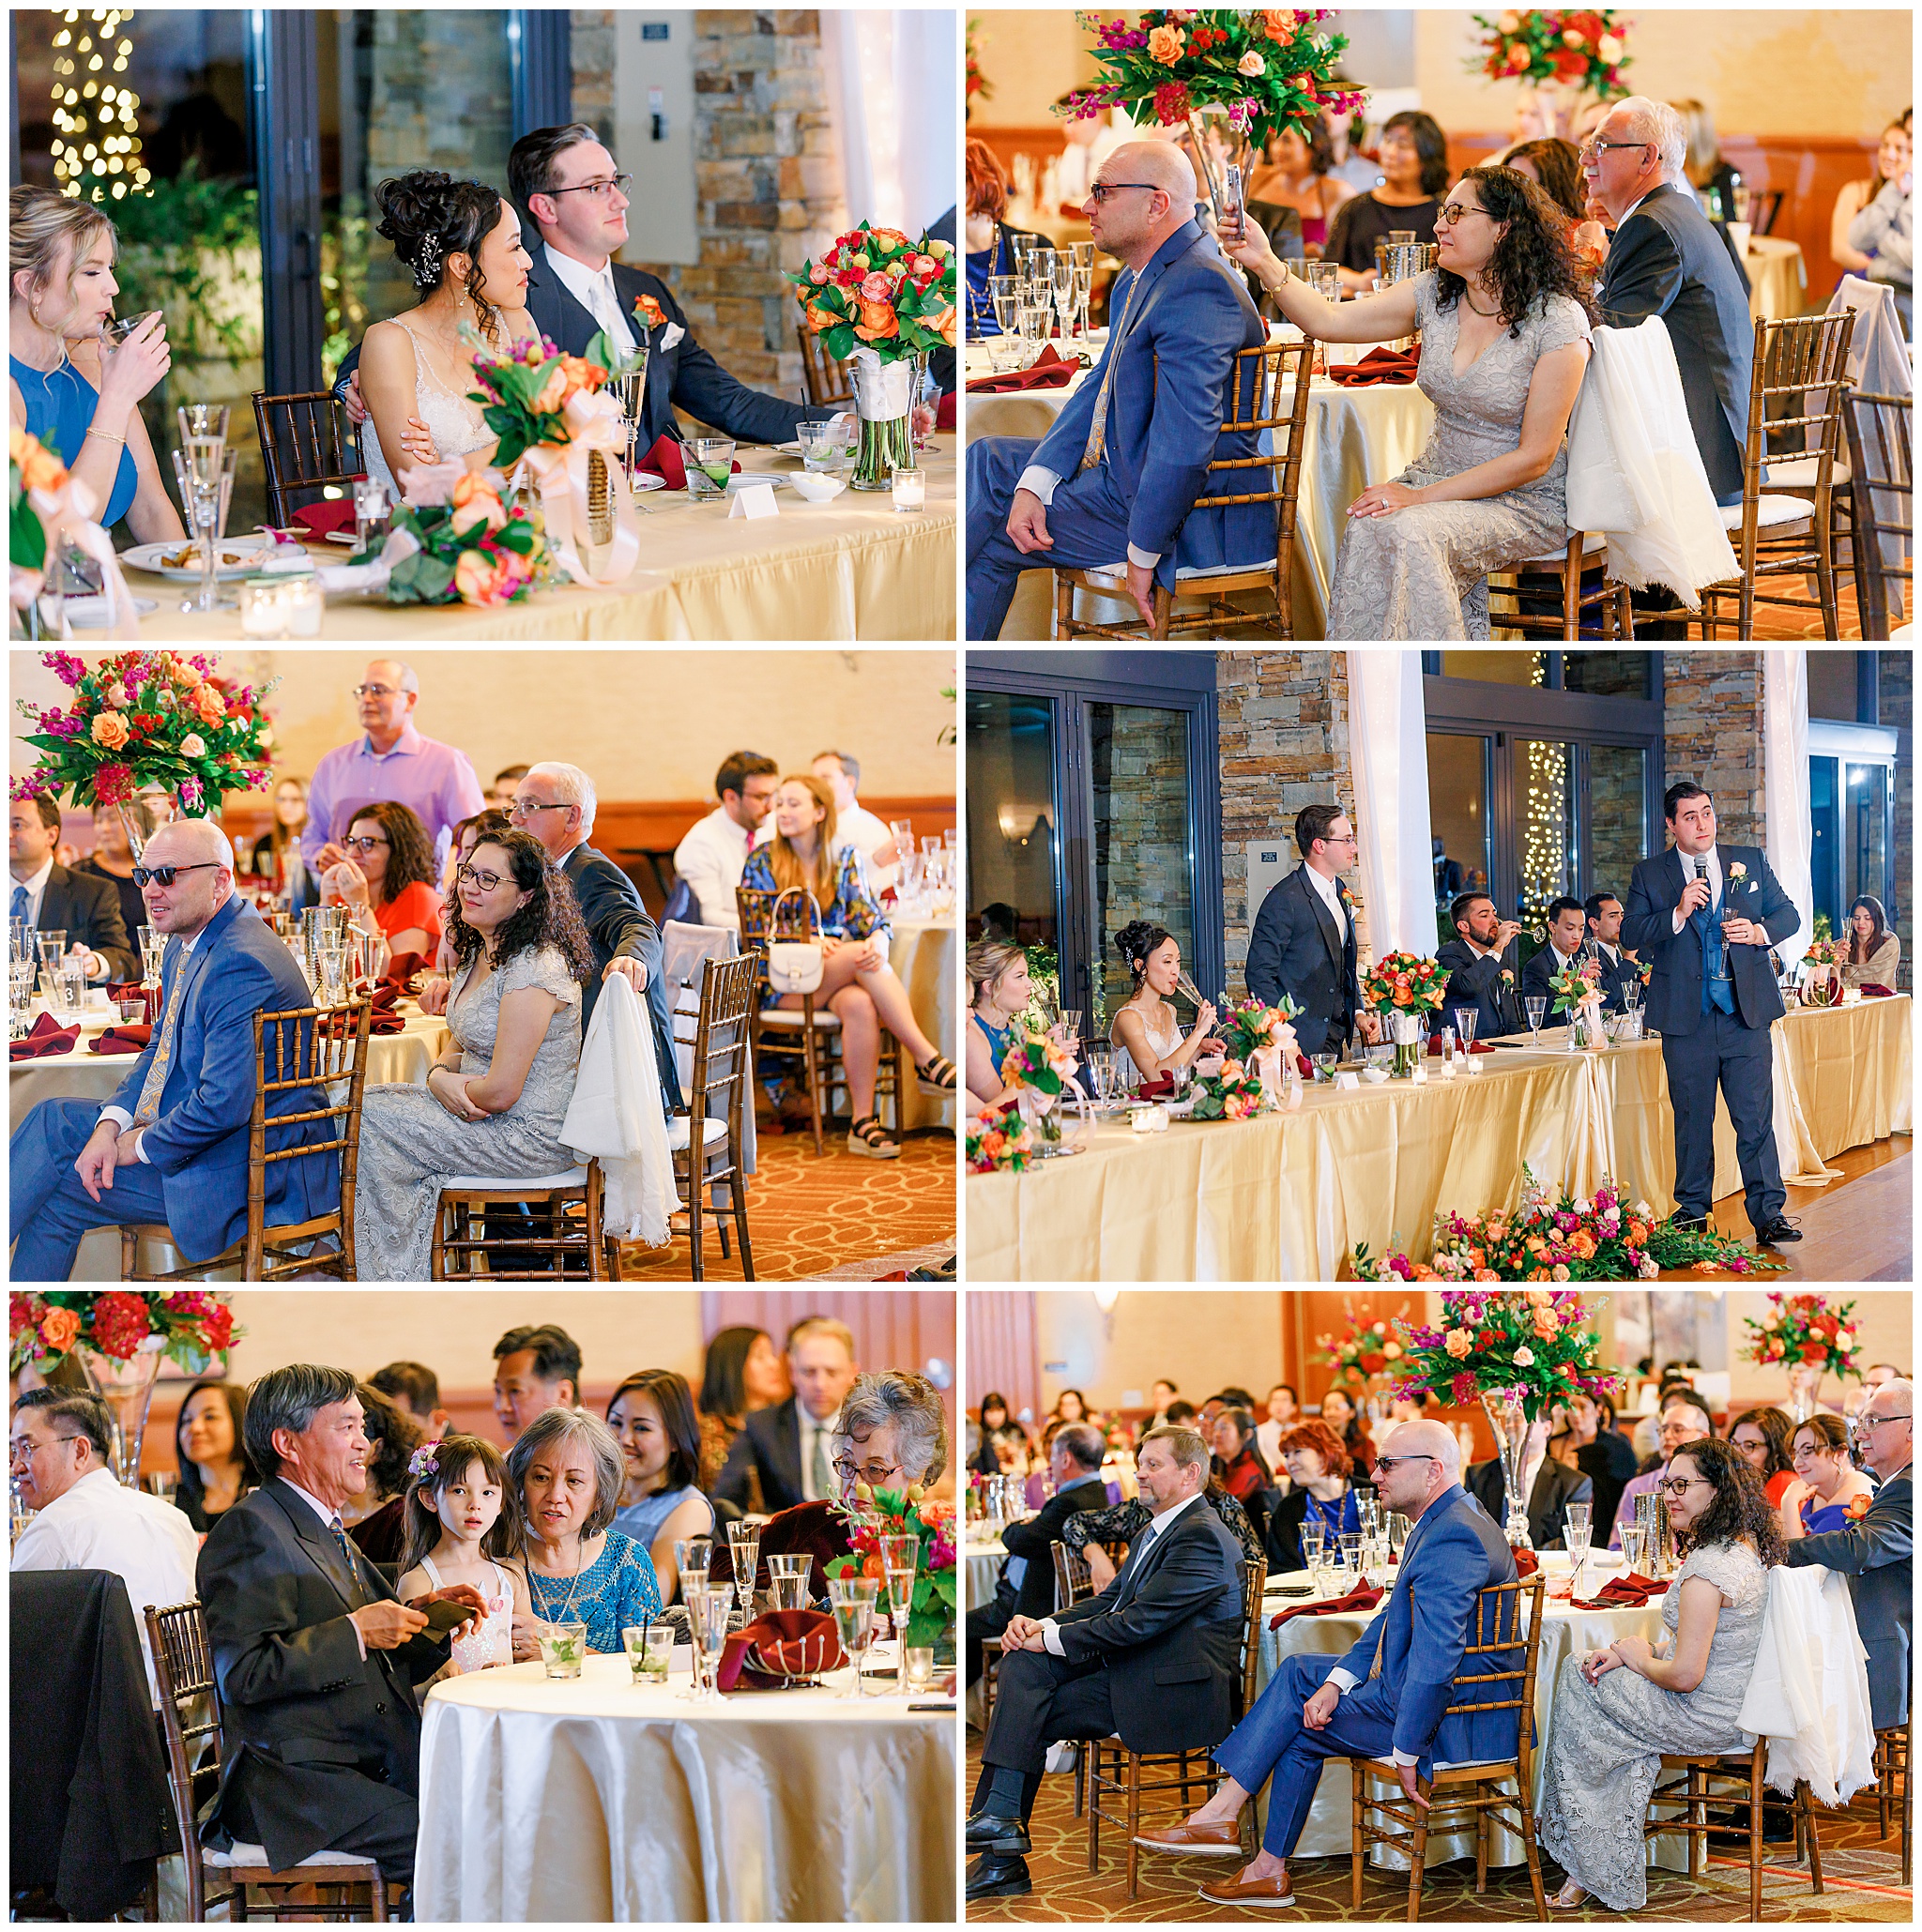 Colorful Outdoor Wedding, Kiva Club Wedding, Peoria Wedding, Bride and Groom, Details, Reception